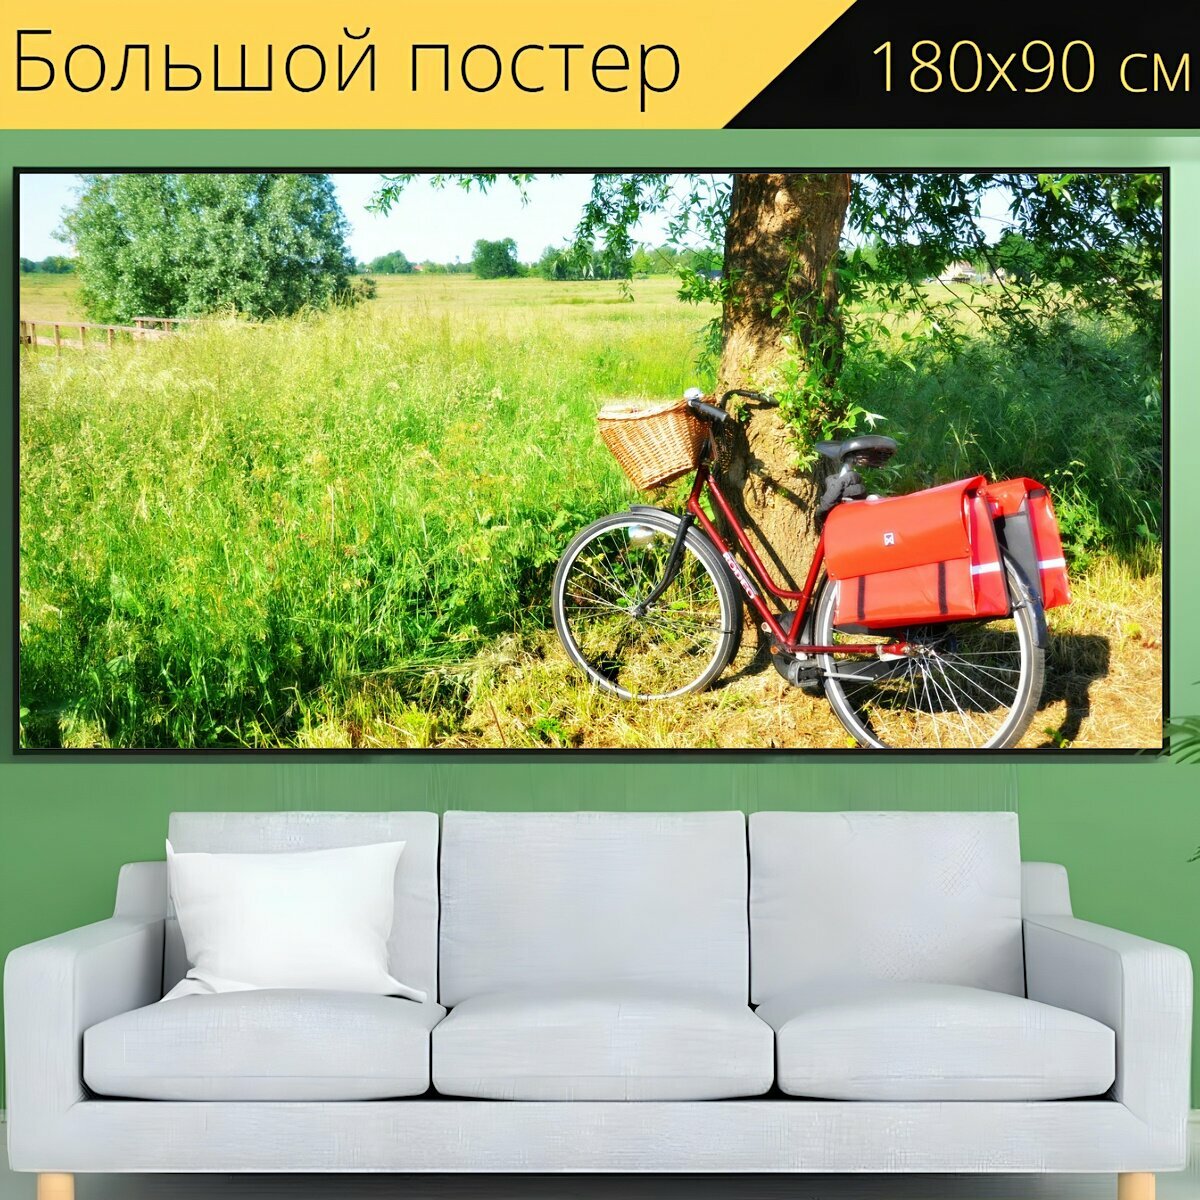 Большой постер "Велосипед, женский велосипед, транспорт" 180 x 90 см. для интерьера